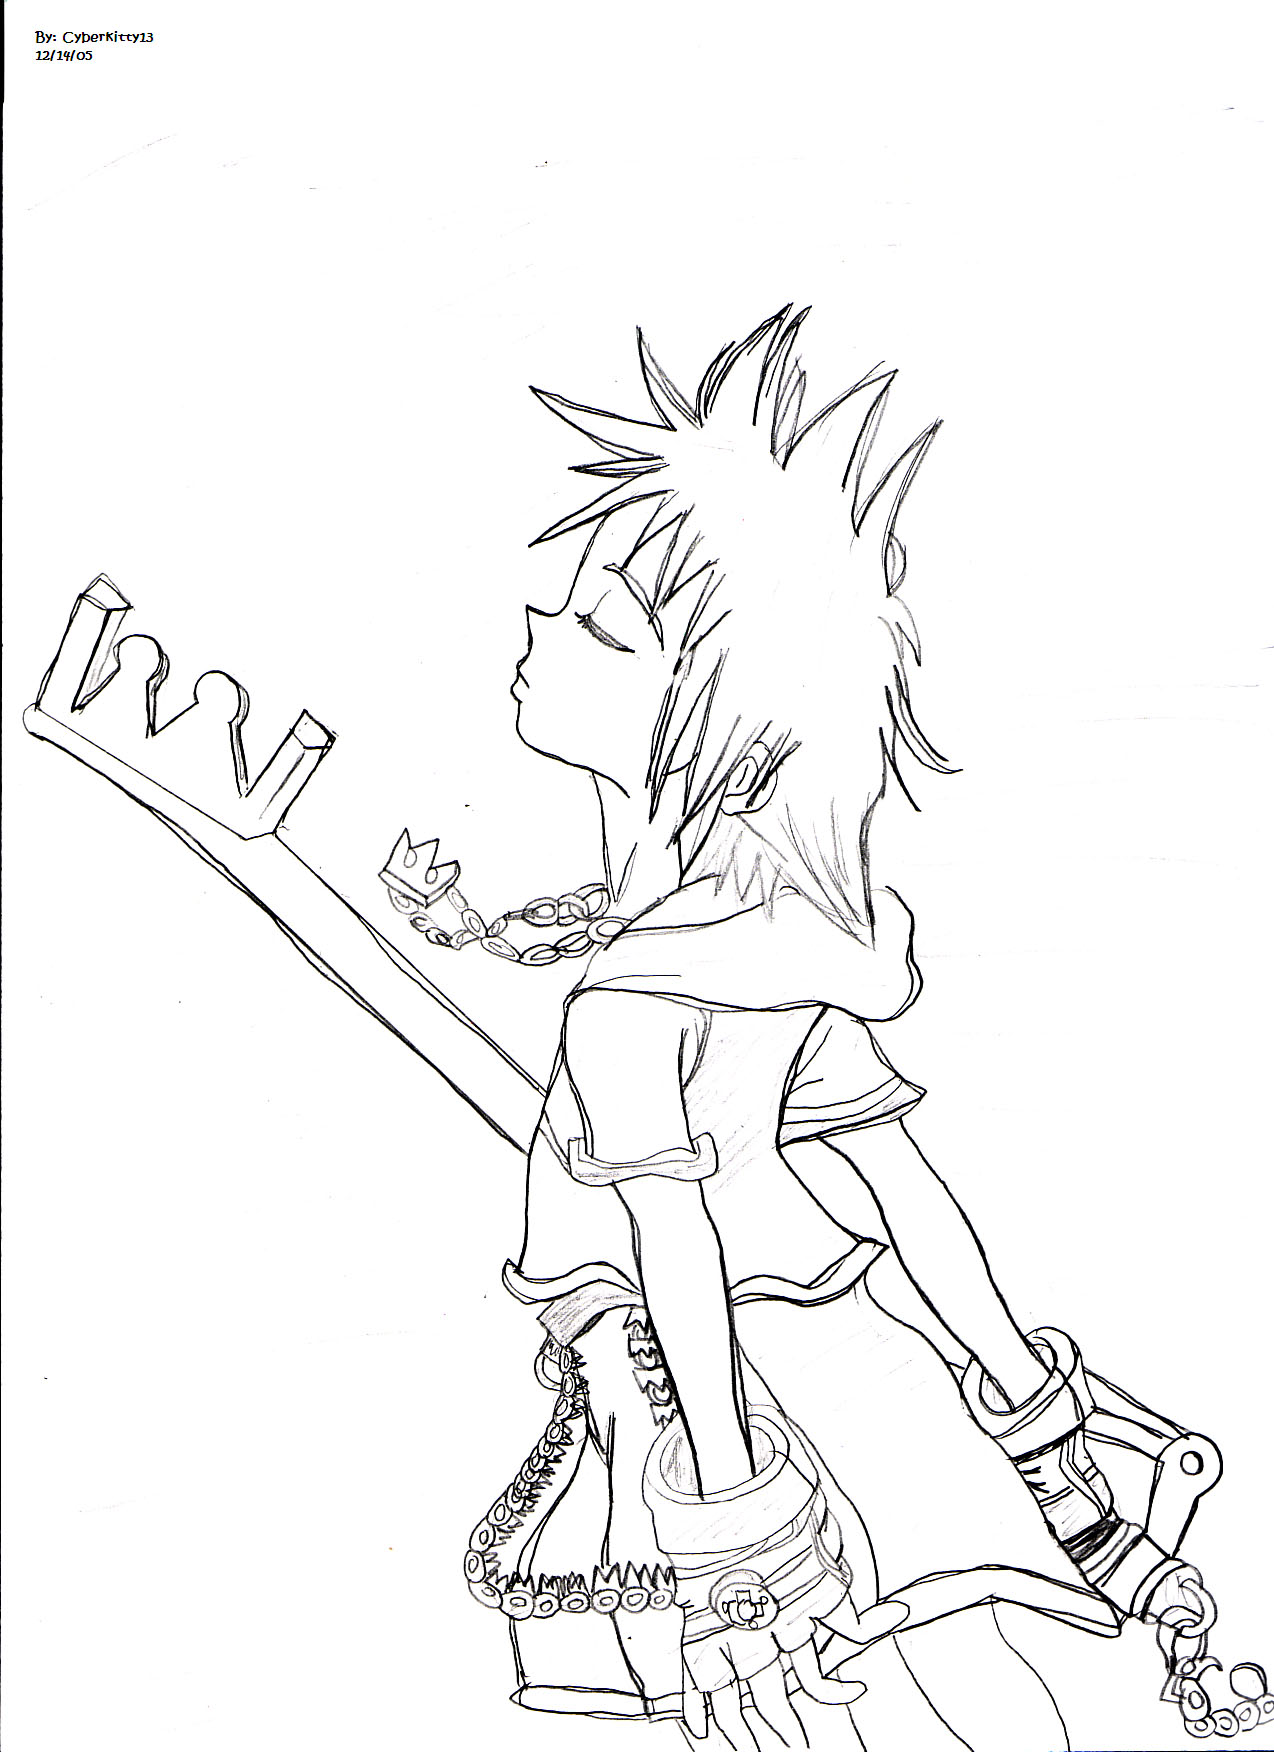 Sora w/ keyblade *first time drawing Sora* by cyberkitty13